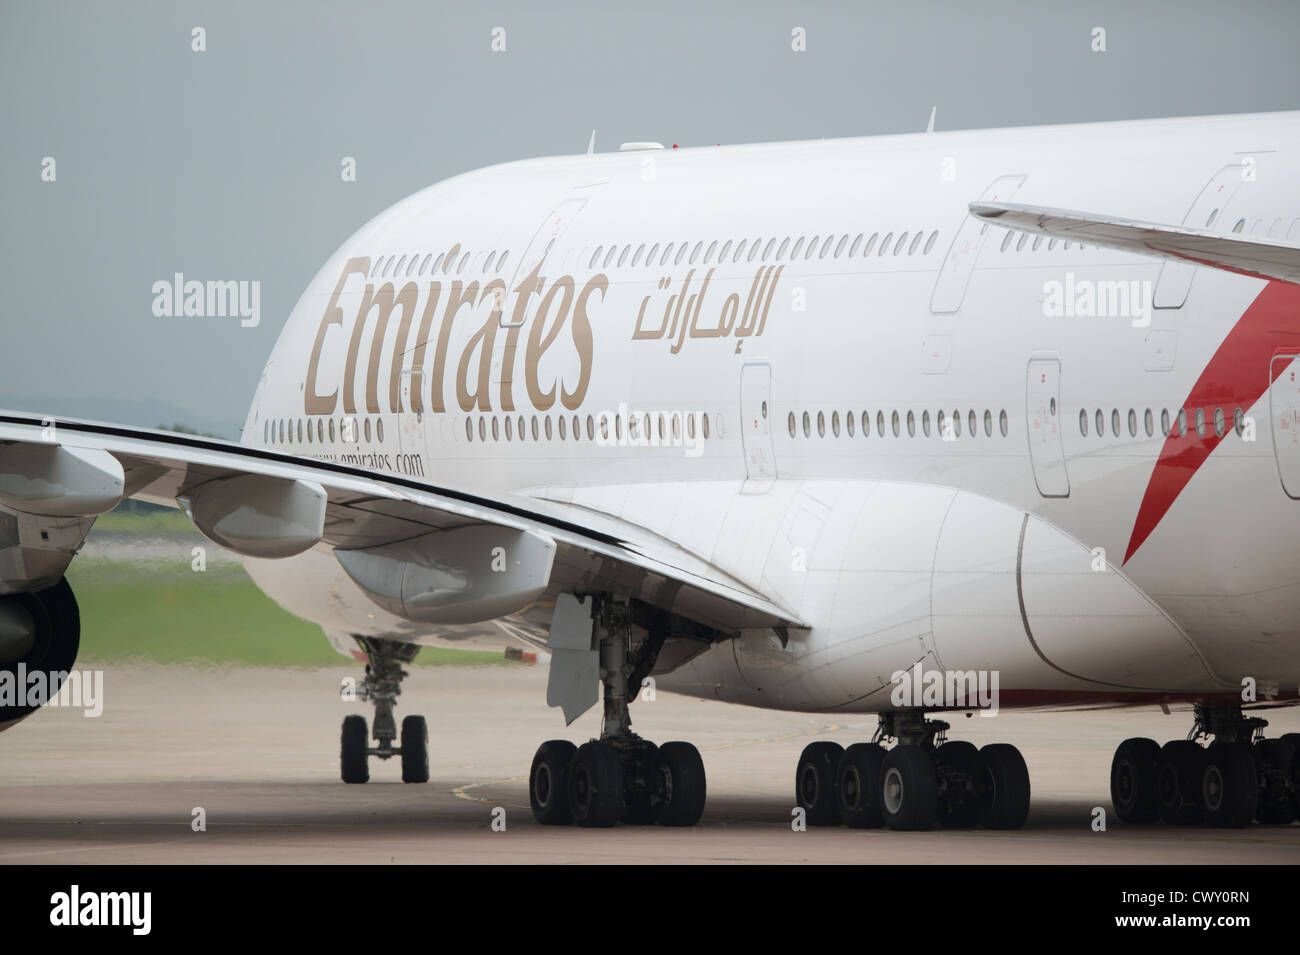 Un Airbus A380 de Emirates de rodadura en la pista de aterrizaje del aeropuerto internacional de Manchester (uso Editorial solamente) Foto de stock